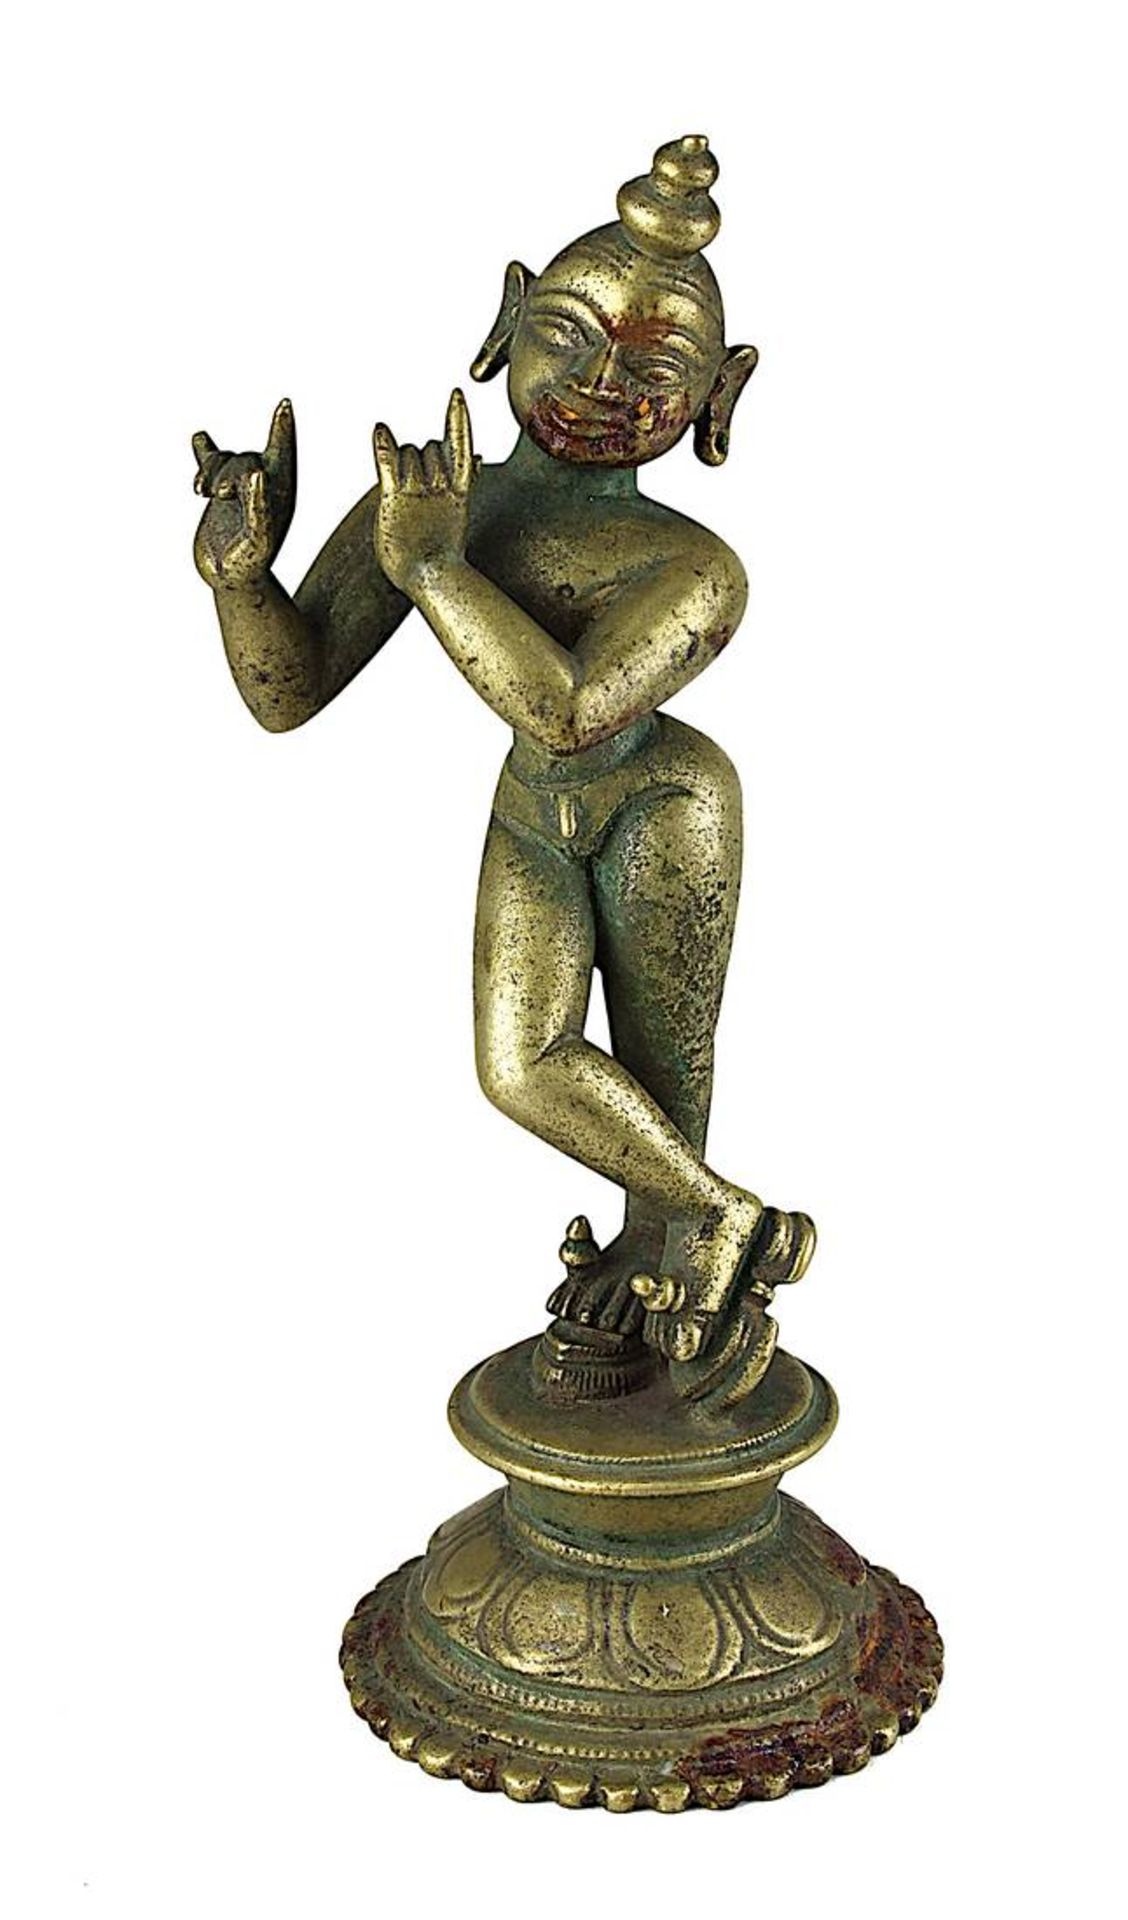 Musizierender Krishna, Indien, 19.Jh., Bronzefigur, querflötespielender Krishna in bewegter